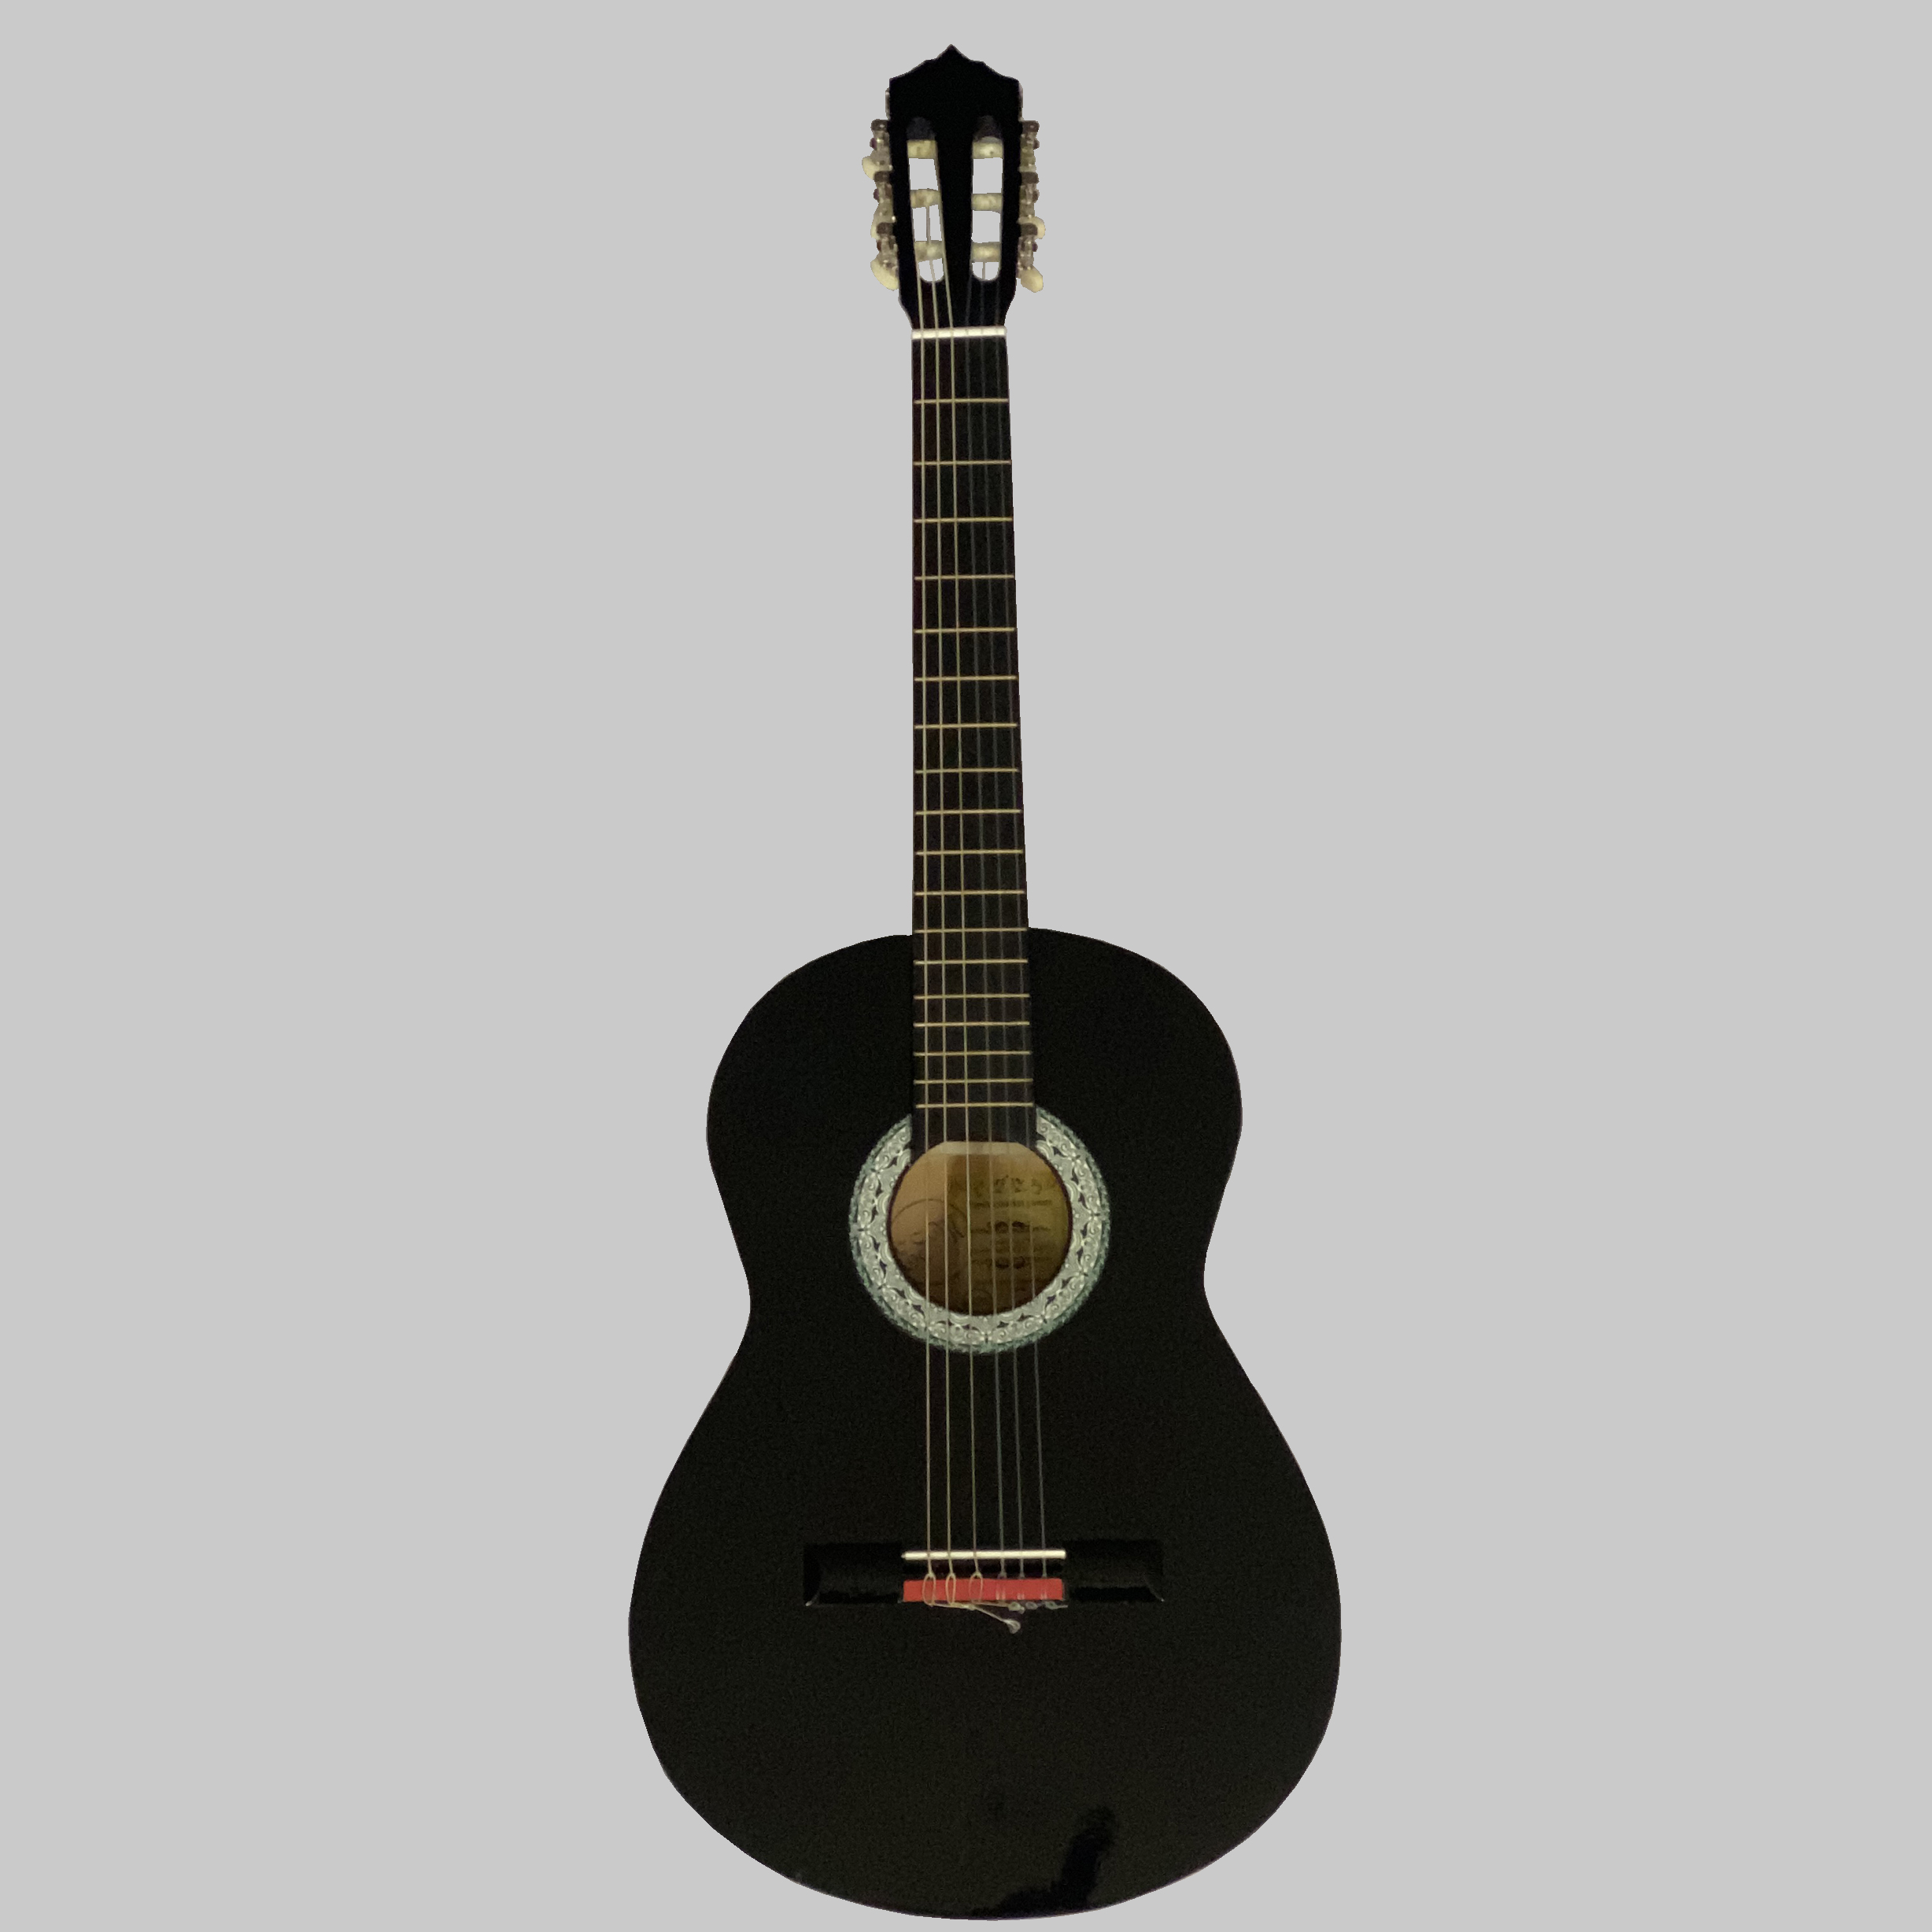 نکته خرید - قیمت روز گیتار کلاسیک اسپیروس مارکت مدل C50 خرید